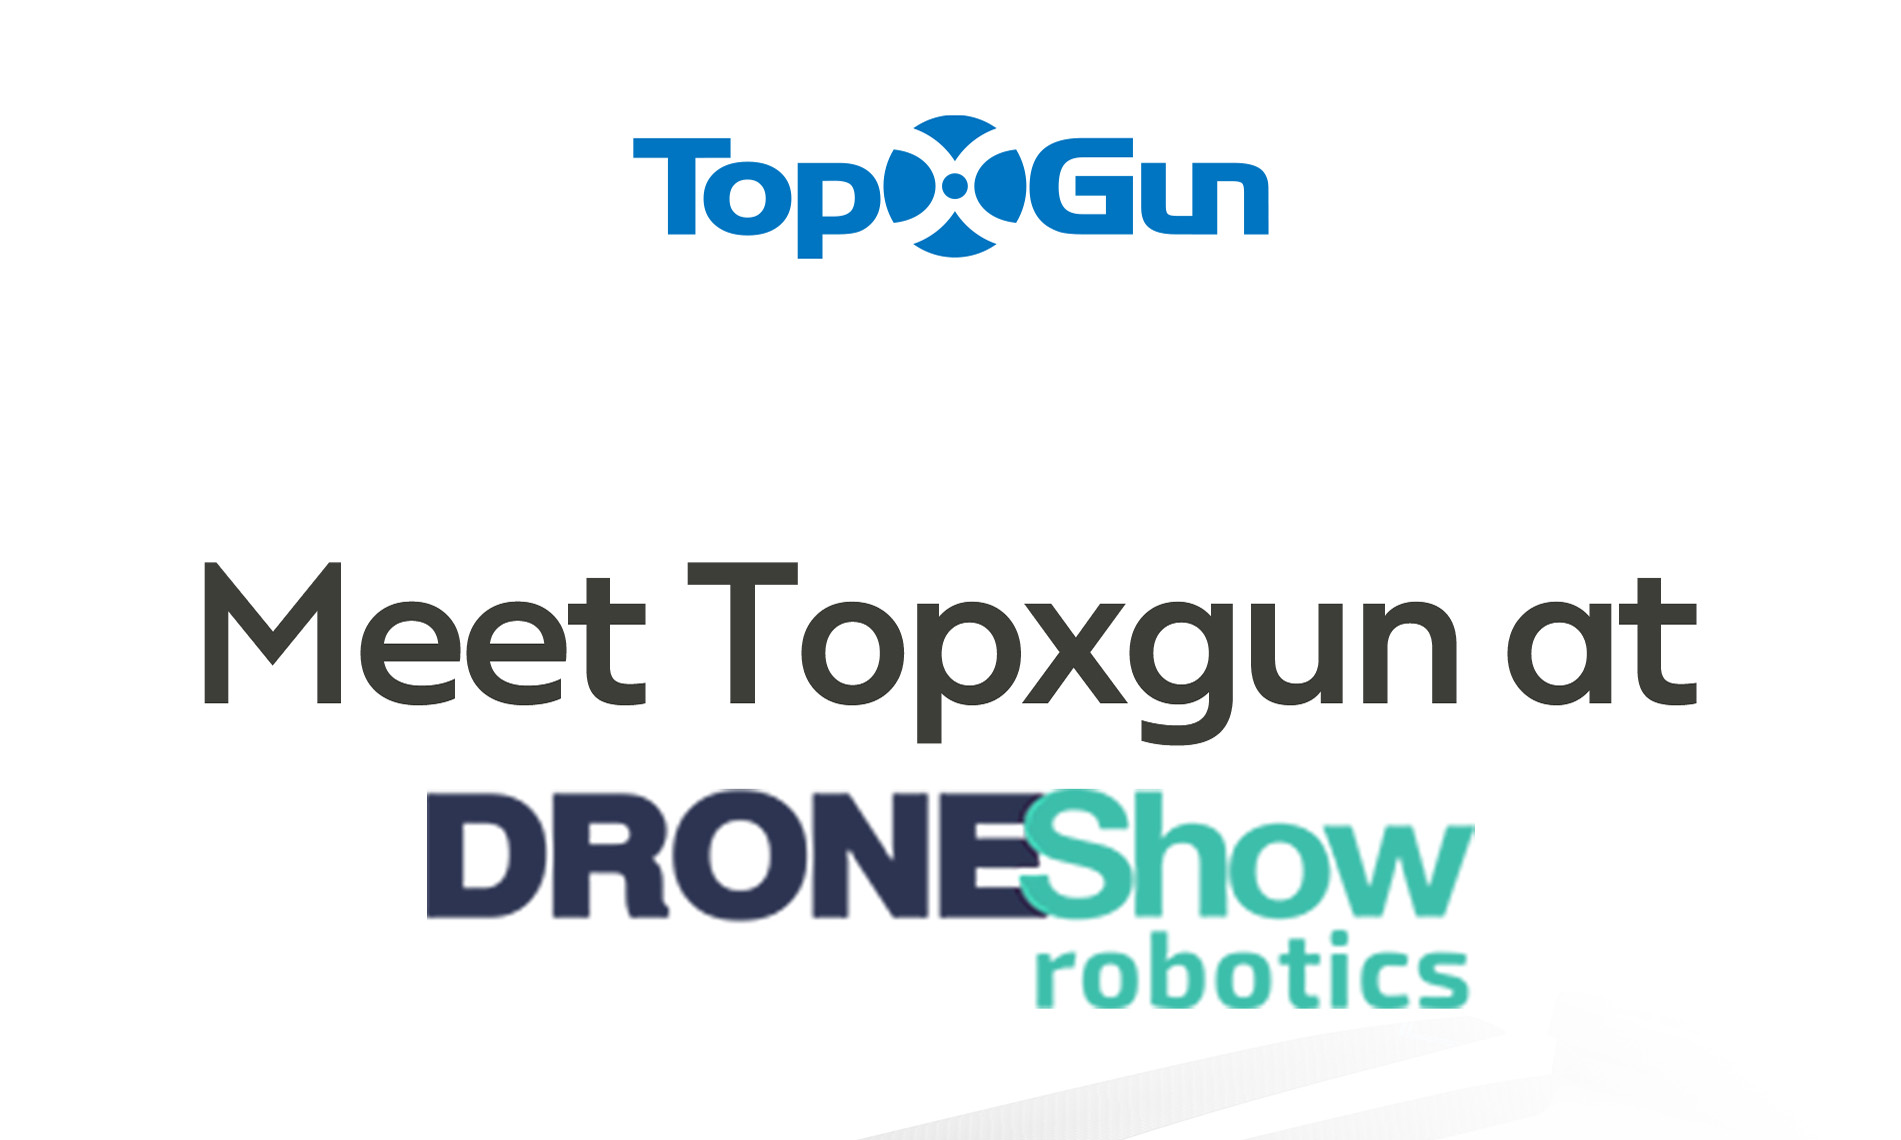 Brezilya'nın Sao Paulo kentindeki DroneShow'da Topxgun ile tanışın!